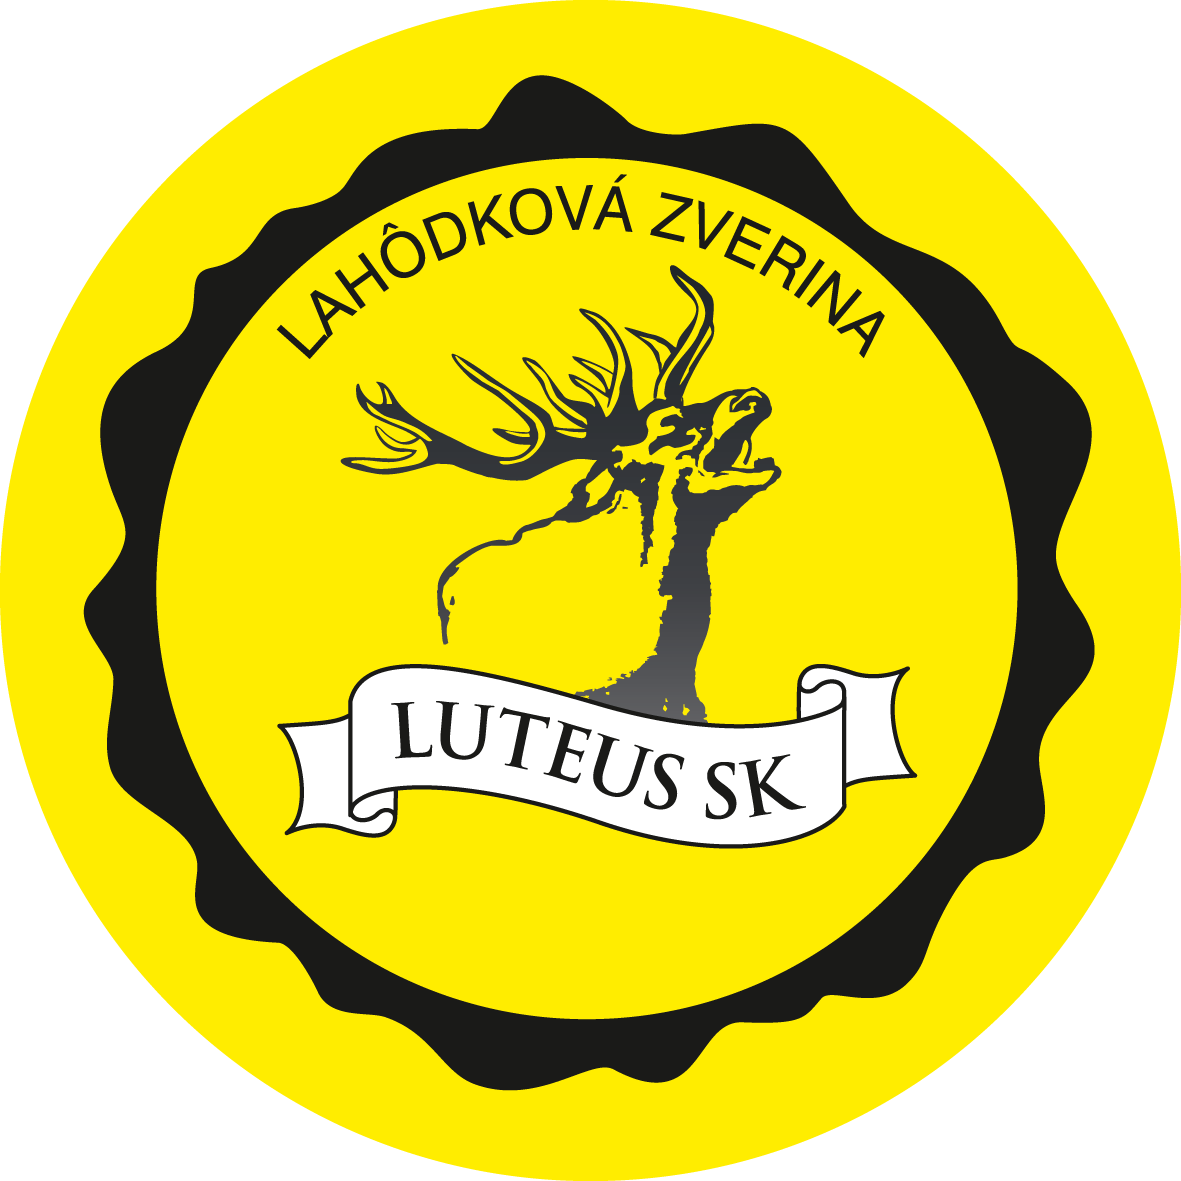 Luteus SK